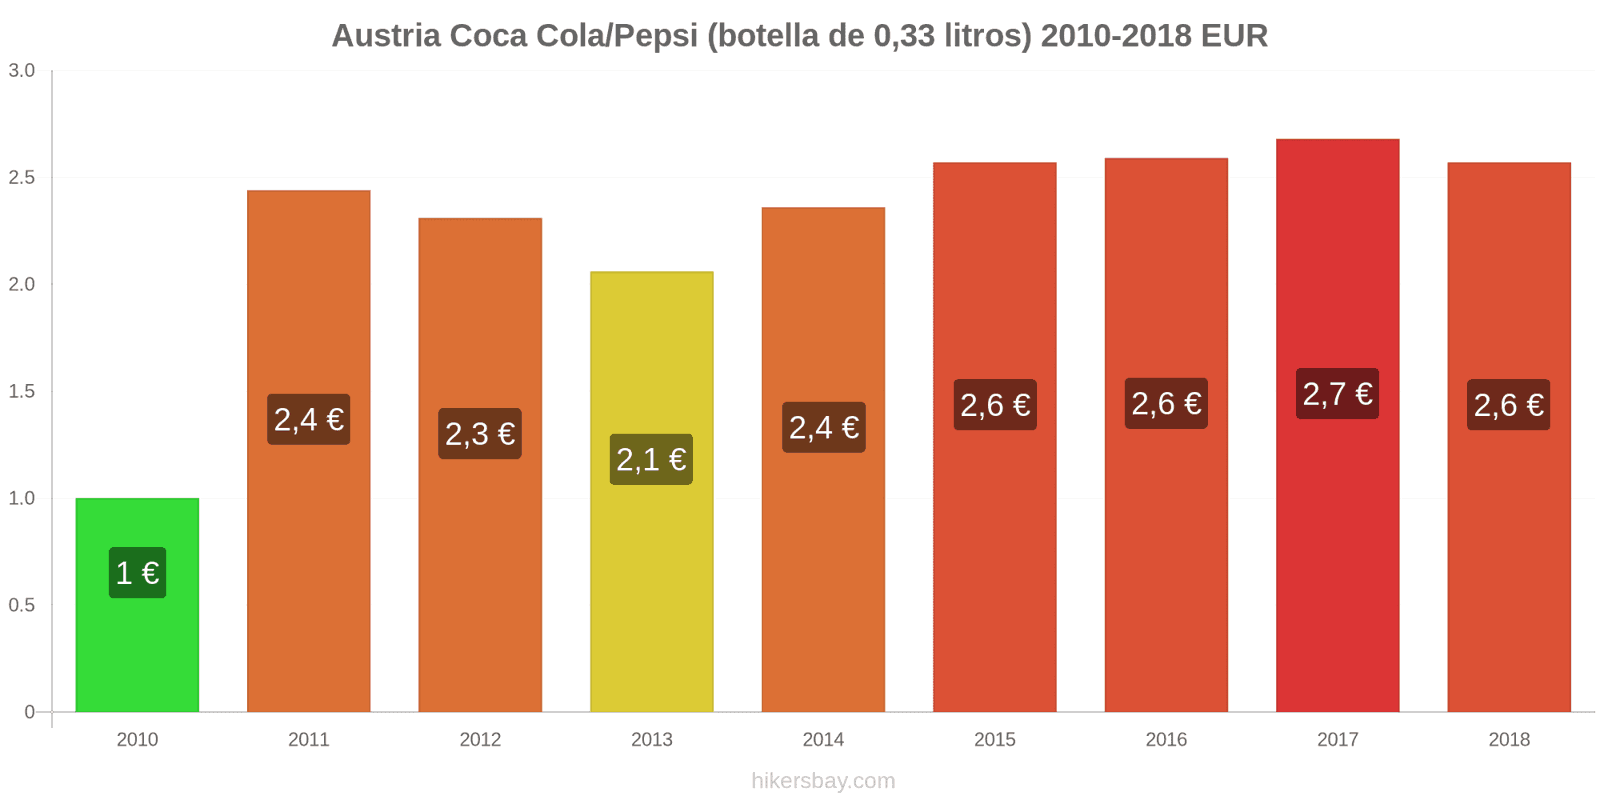 Austria cambios de precios Coca-Cola/Pepsi (botella de 0.33 litros) hikersbay.com